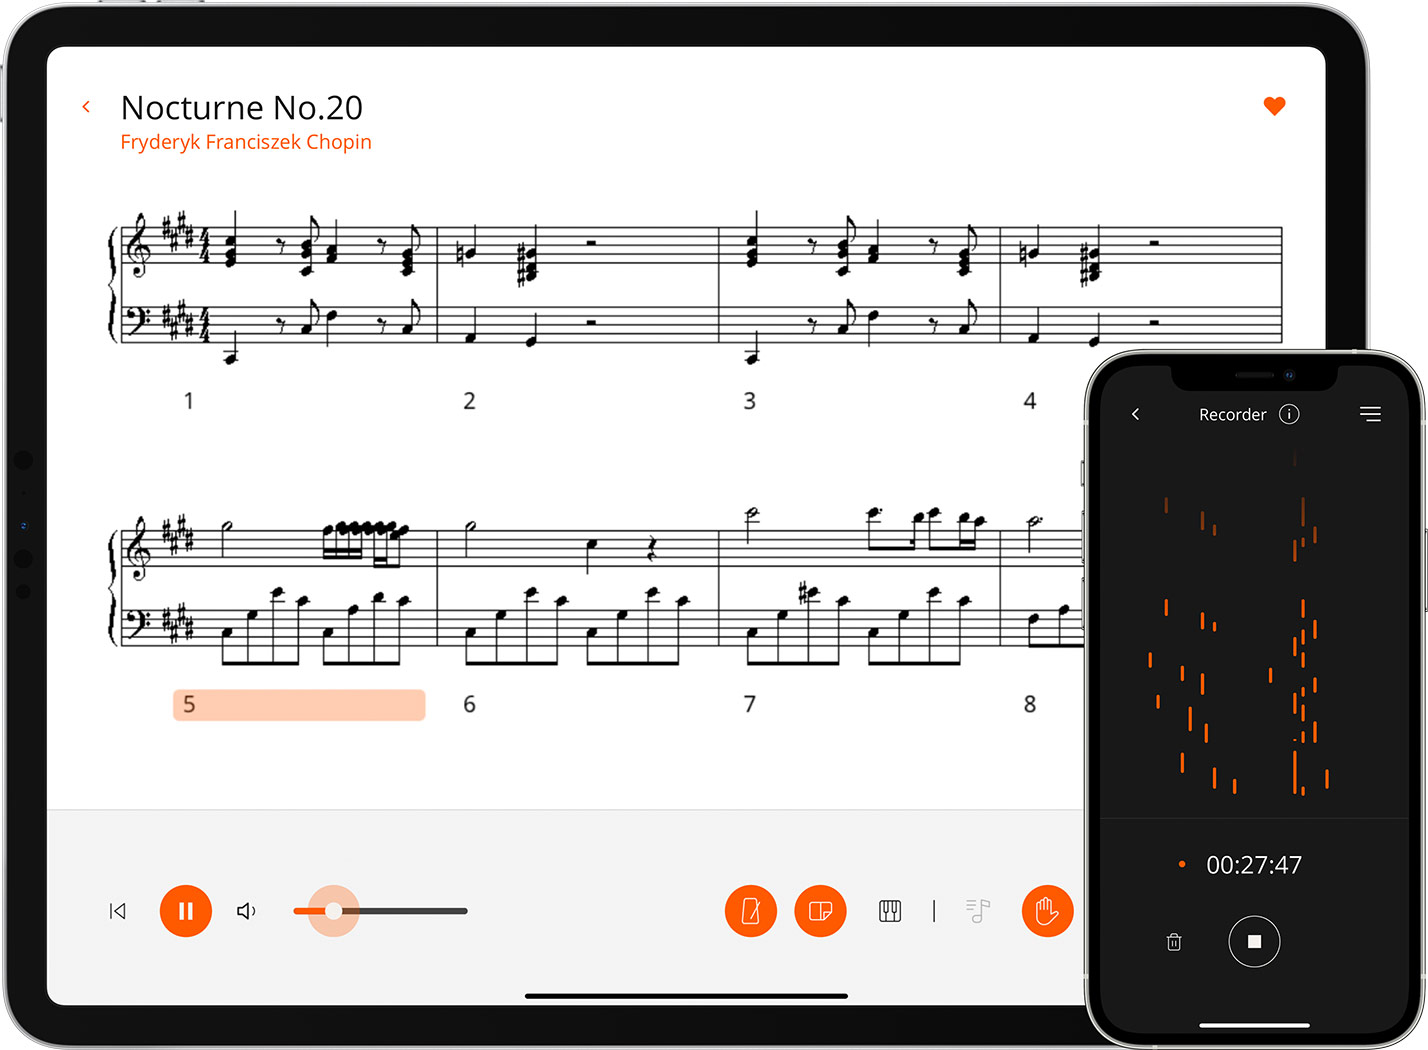 ローランド・ピアノをもっと楽しく使ってみよう！ Roland Piano Appは、ローランド・ピアノとスマートフォンやタブレットをBluetooth®接続でつなげることで、ピアノの練習や音楽の楽しみをさらに広げてくれるアプリです。直感的に操作可能なワイヤレス・リモコンとしての機能や、充実したレッス […]